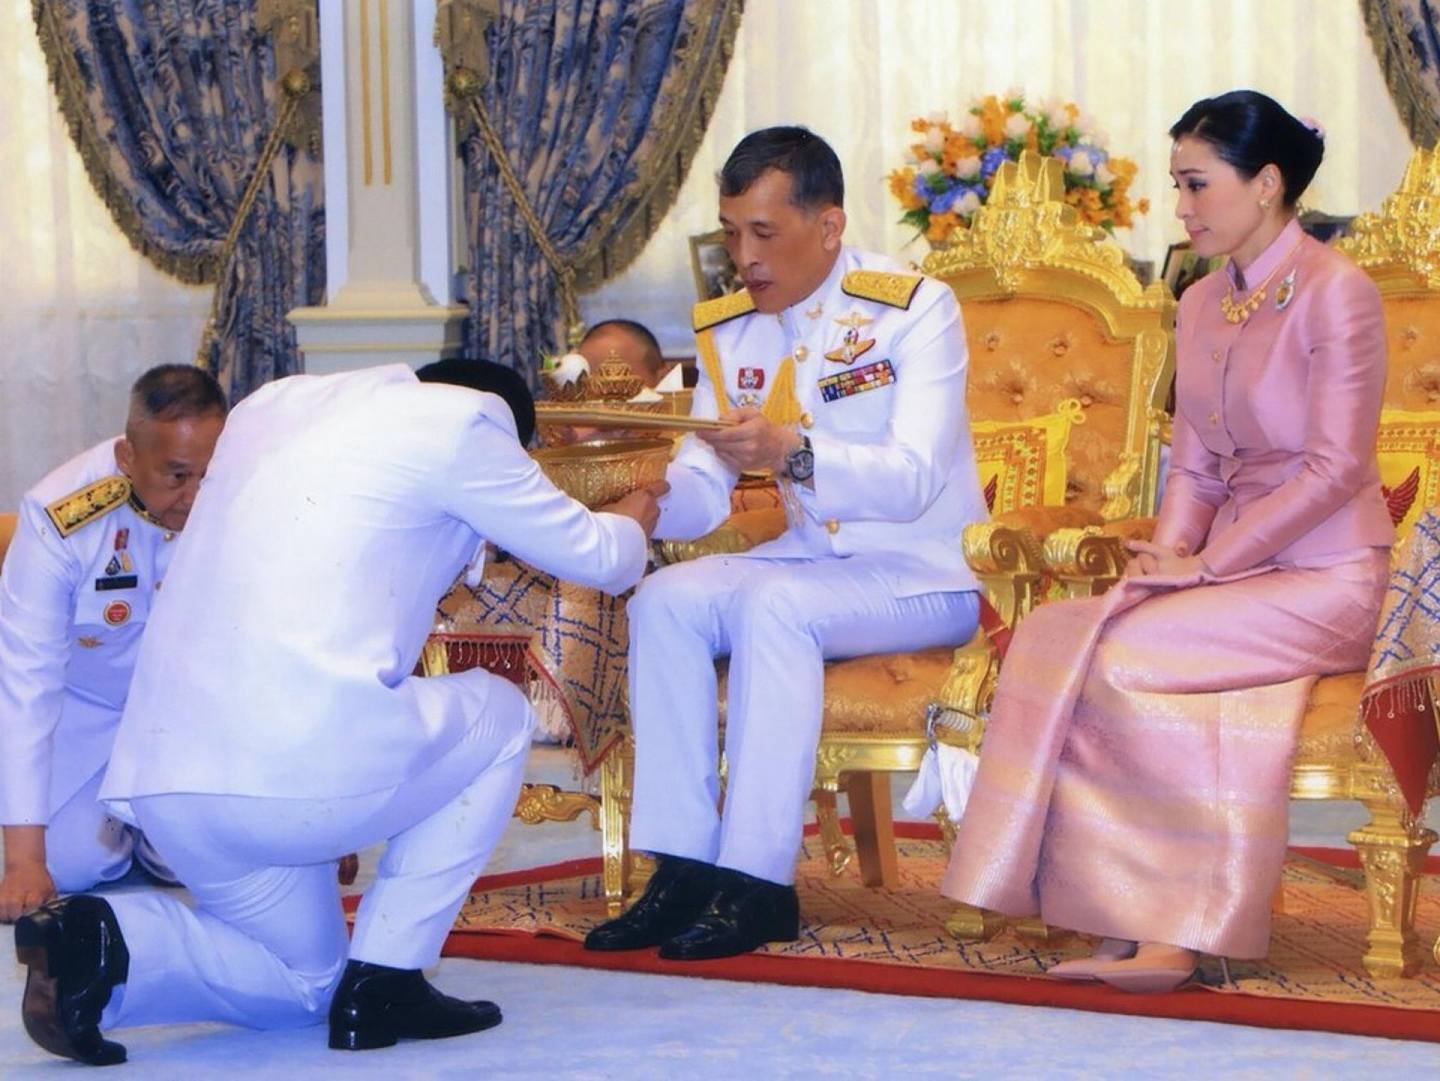 泰国王室2019年5月1日拍摄哇集拉隆功与苏提达在曼谷举行婚礼照片。（AFP）